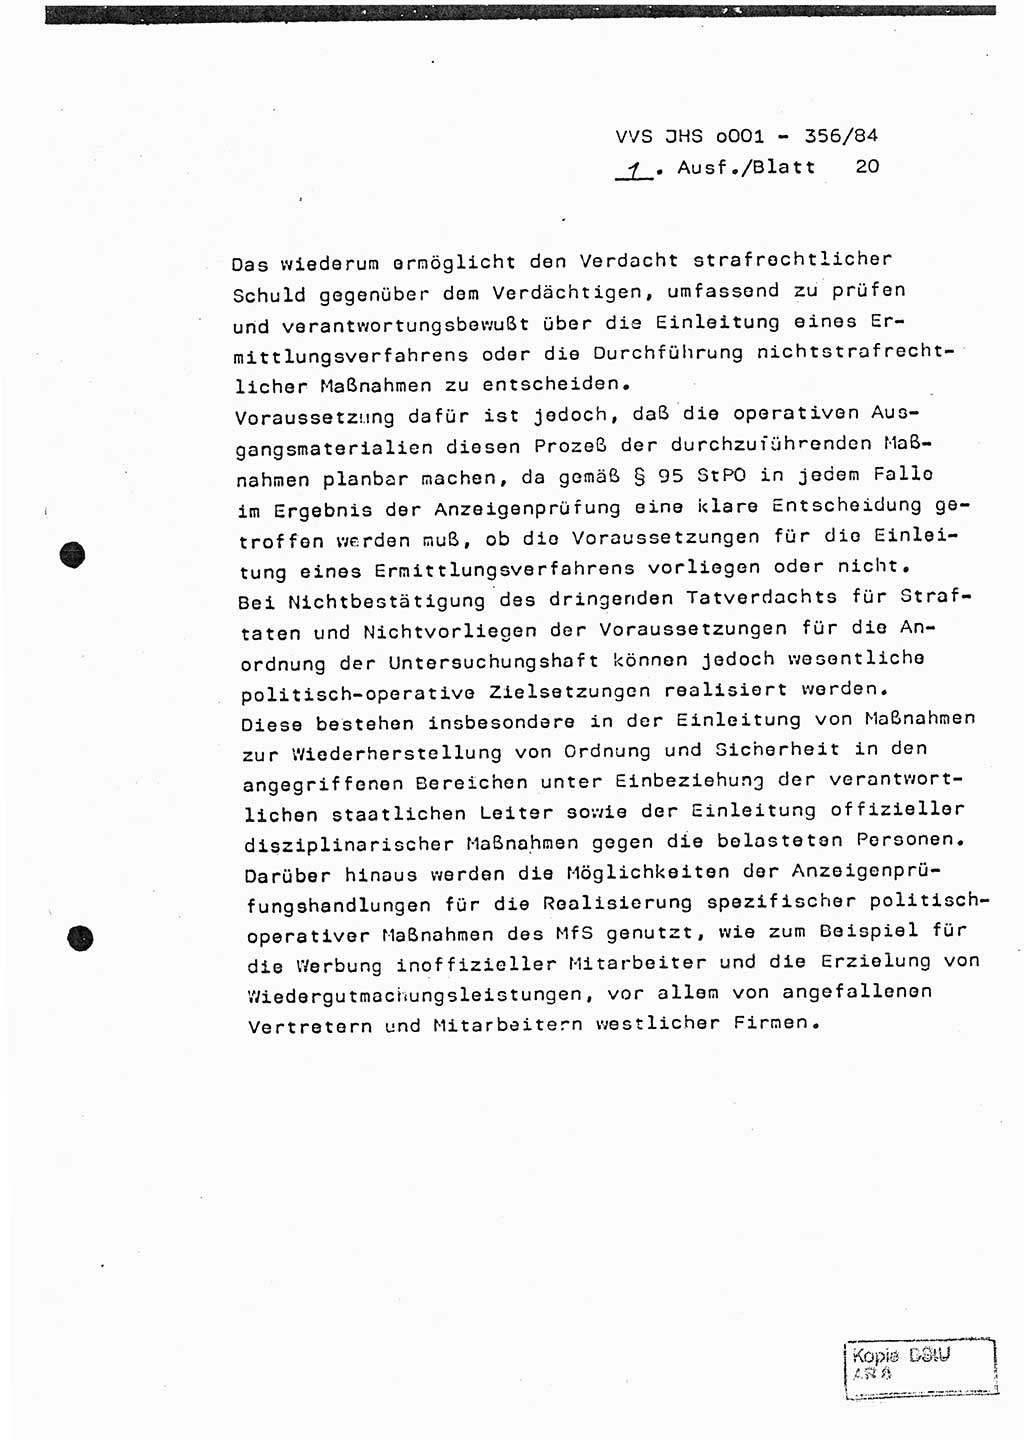 Diplomarbeit, Major Lutz Rahaus (HA Ⅸ/3), Ministerium für Staatssicherheit (MfS) [Deutsche Demokratische Republik (DDR)], Juristische Hochschule (JHS), Vertrauliche Verschlußsache (VVS) o001-356/84, Potsdam 1984, Seite 20 (Dipl.-Arb. MfS DDR JHS VVS o001-356/84 1984, S. 20)